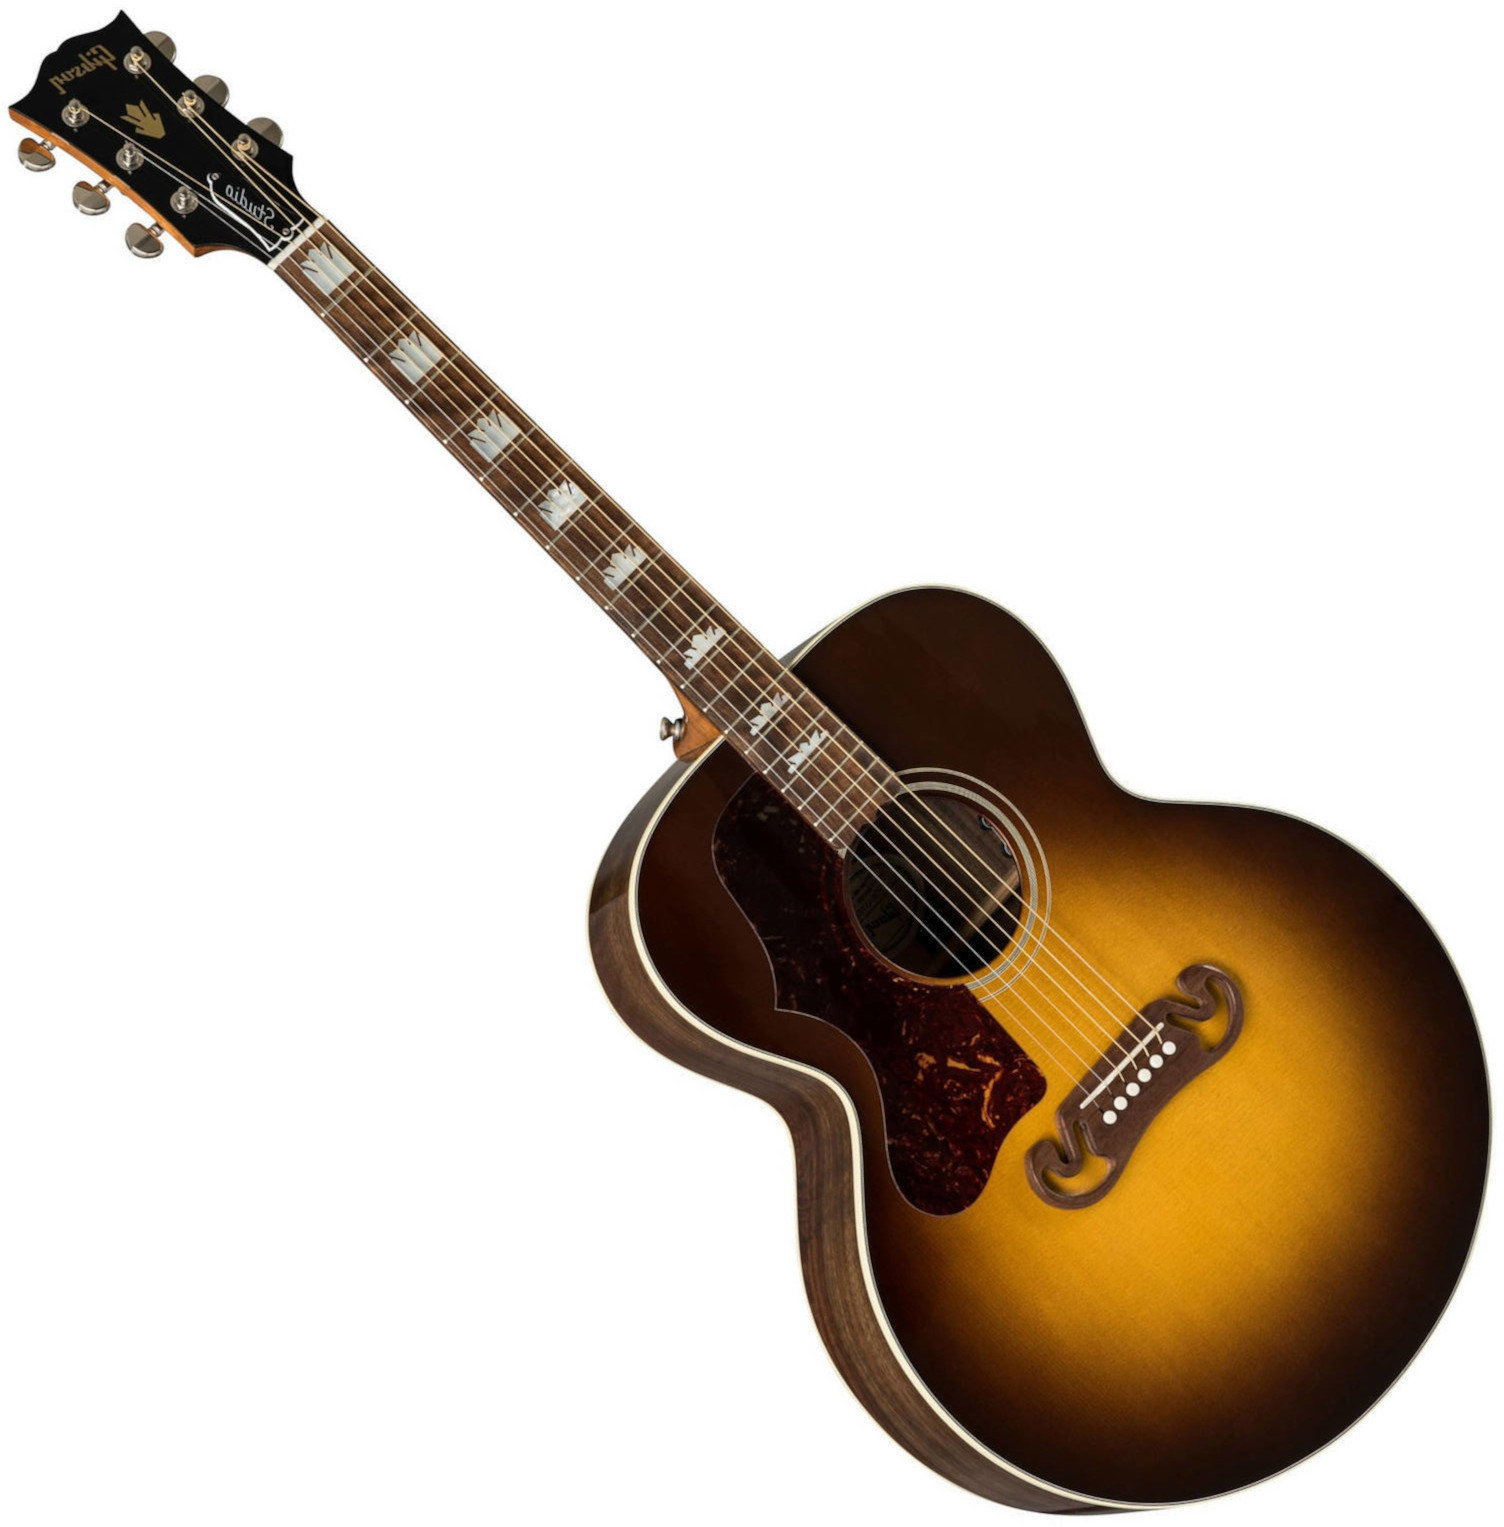 Ηλεκτροακουστική Κιθάρα Jumbo Gibson J-200 Studio 2019 Walnut Burst Lefty